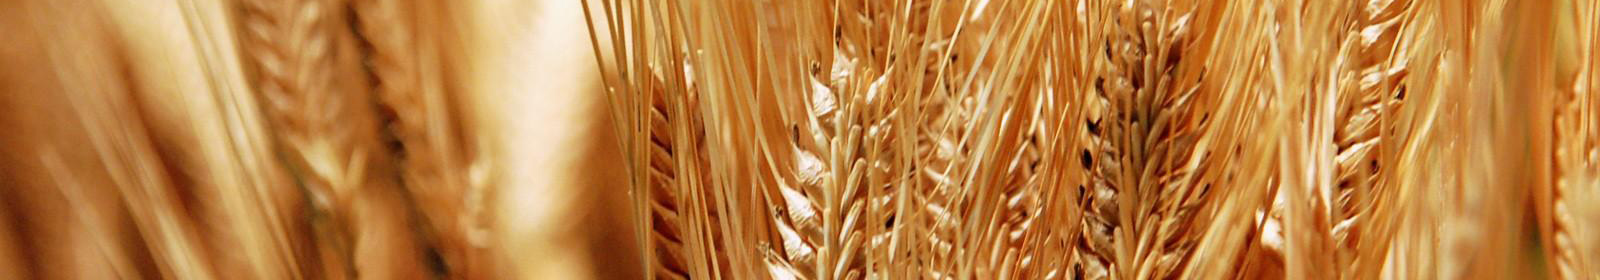 Ремонт зерносушилок помогает сохранить зерно